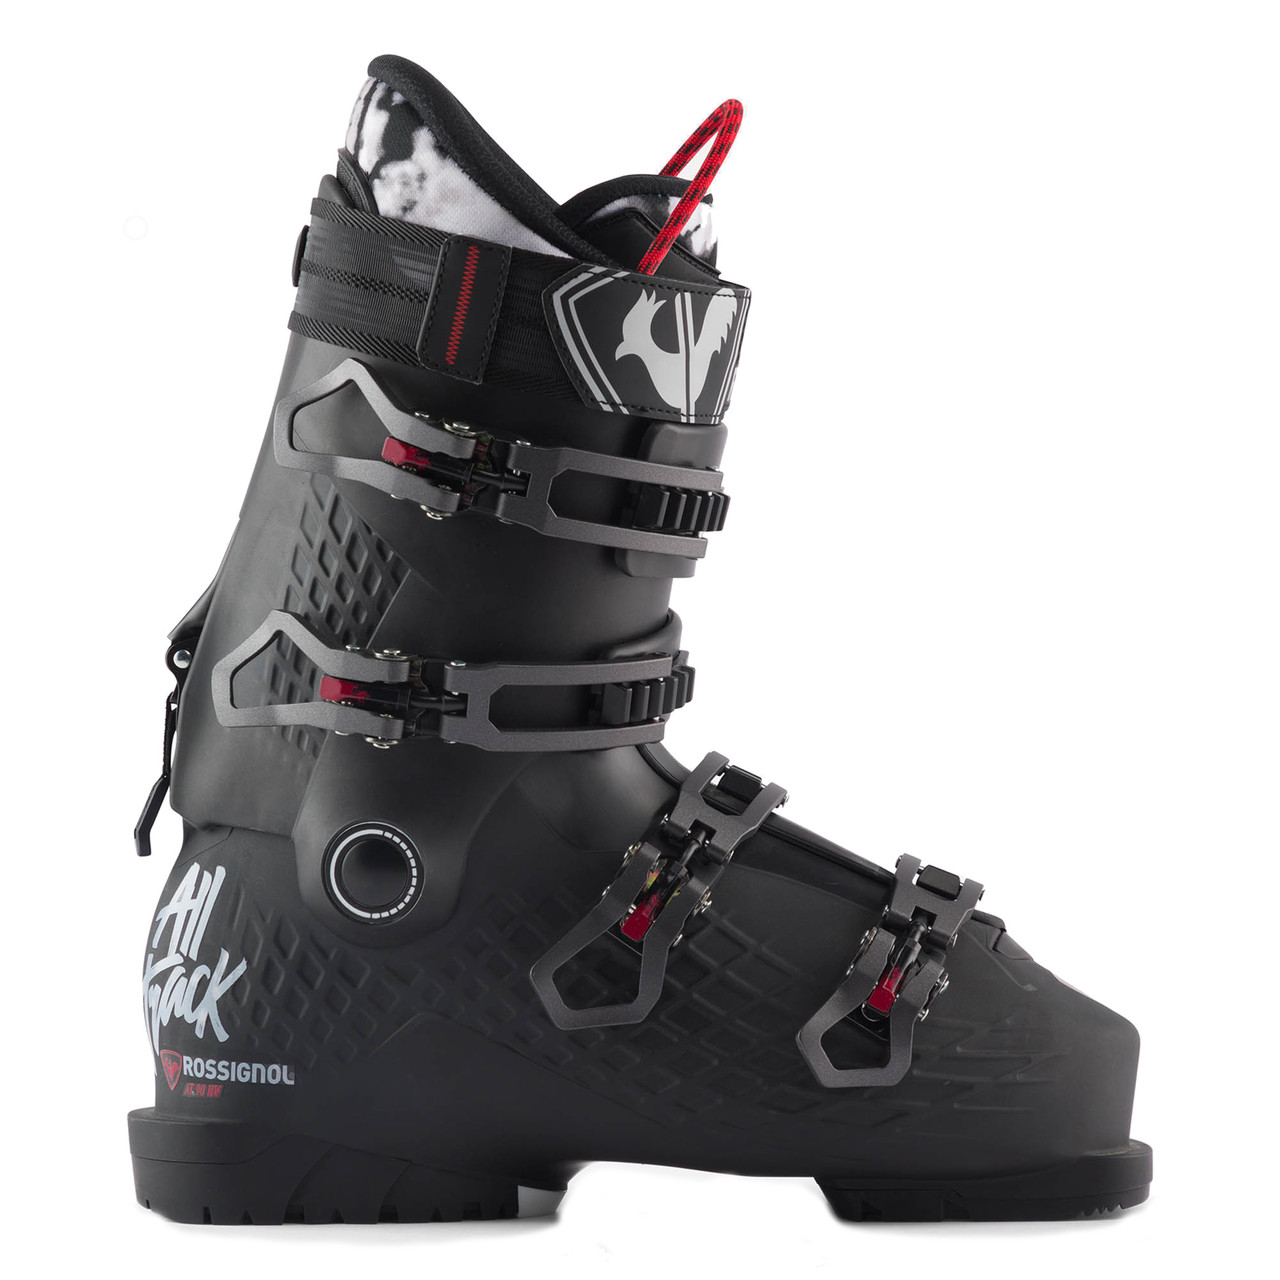 Rossignol Alltrack 90 HV Ski Boot - Men's (17469)